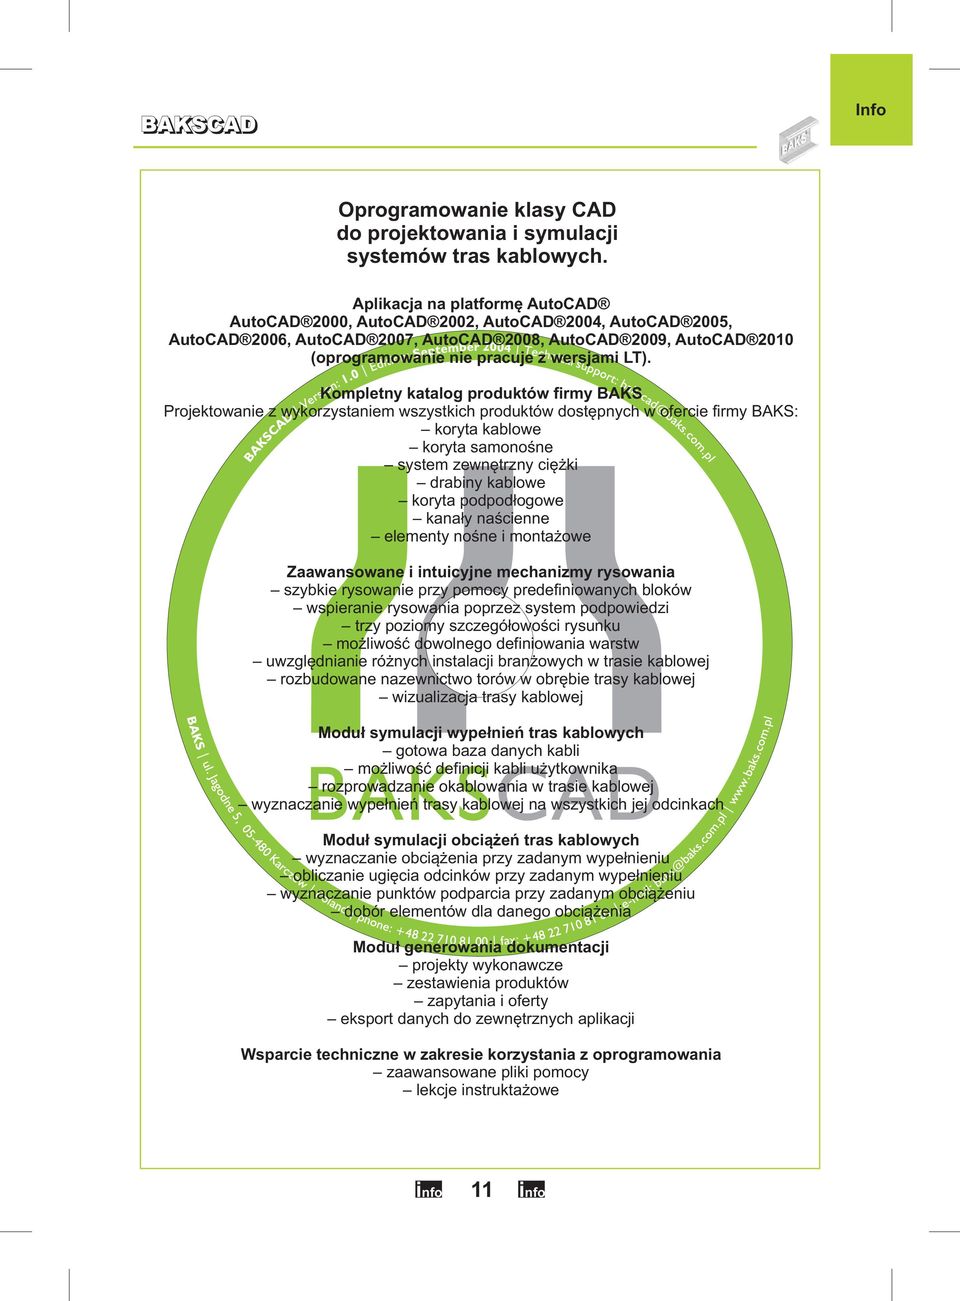 Kompletny katalog produktów firmy BAKS Projektowanie z wykorzystaniem wszystkich produktów dostępnych w ofercie firmy BAKS: koryta kablowe koryta samonośne system zewnętrzny ciężki drabiny kablowe